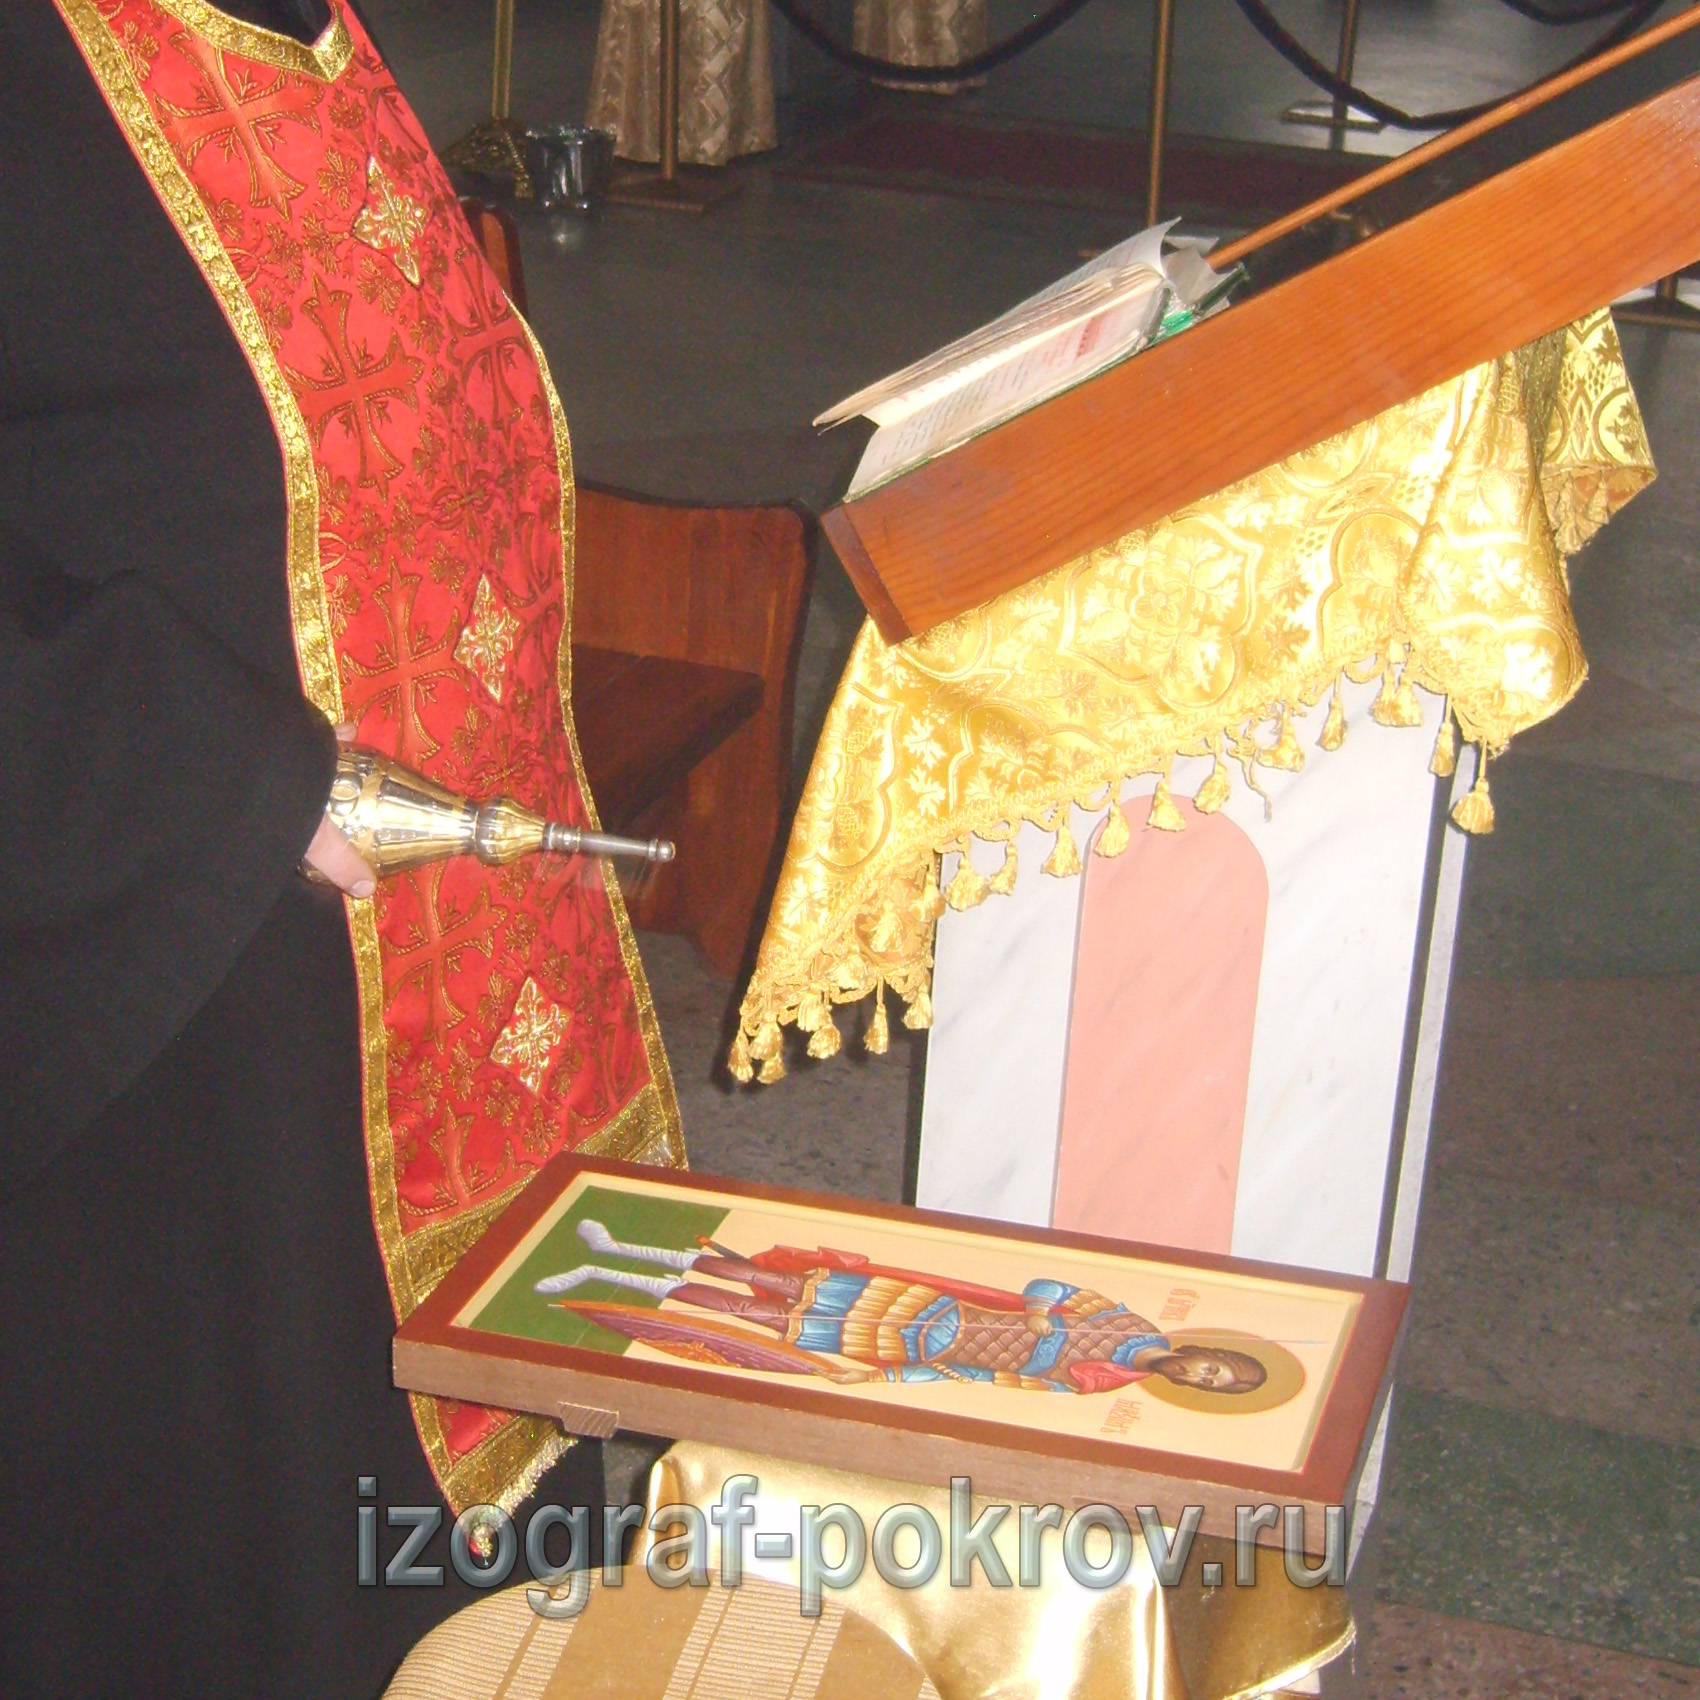 Готовую иконуа Максима Антиохийского воина освятил настоятель храма Покрова Пресвятой Богородицы